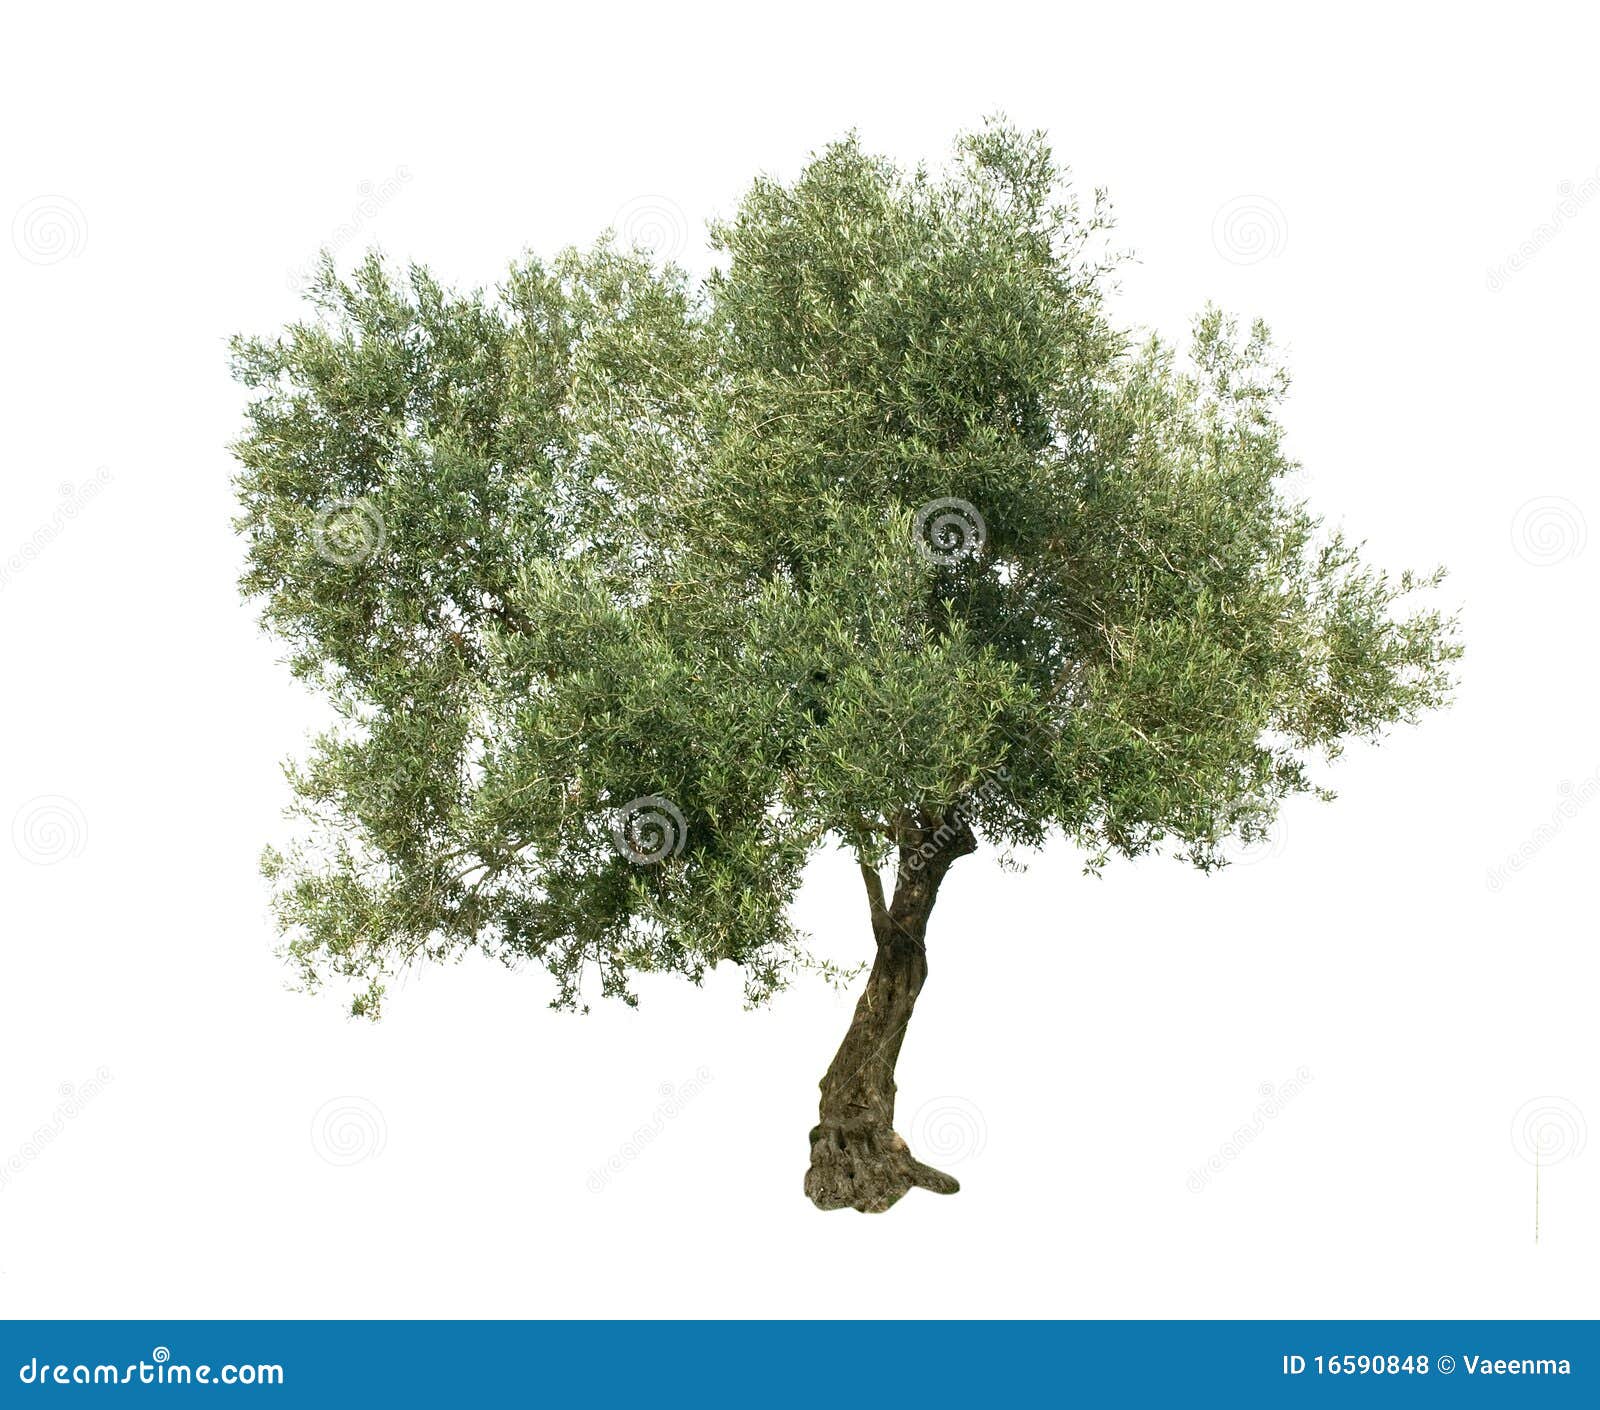 clip art olive tree - photo #50